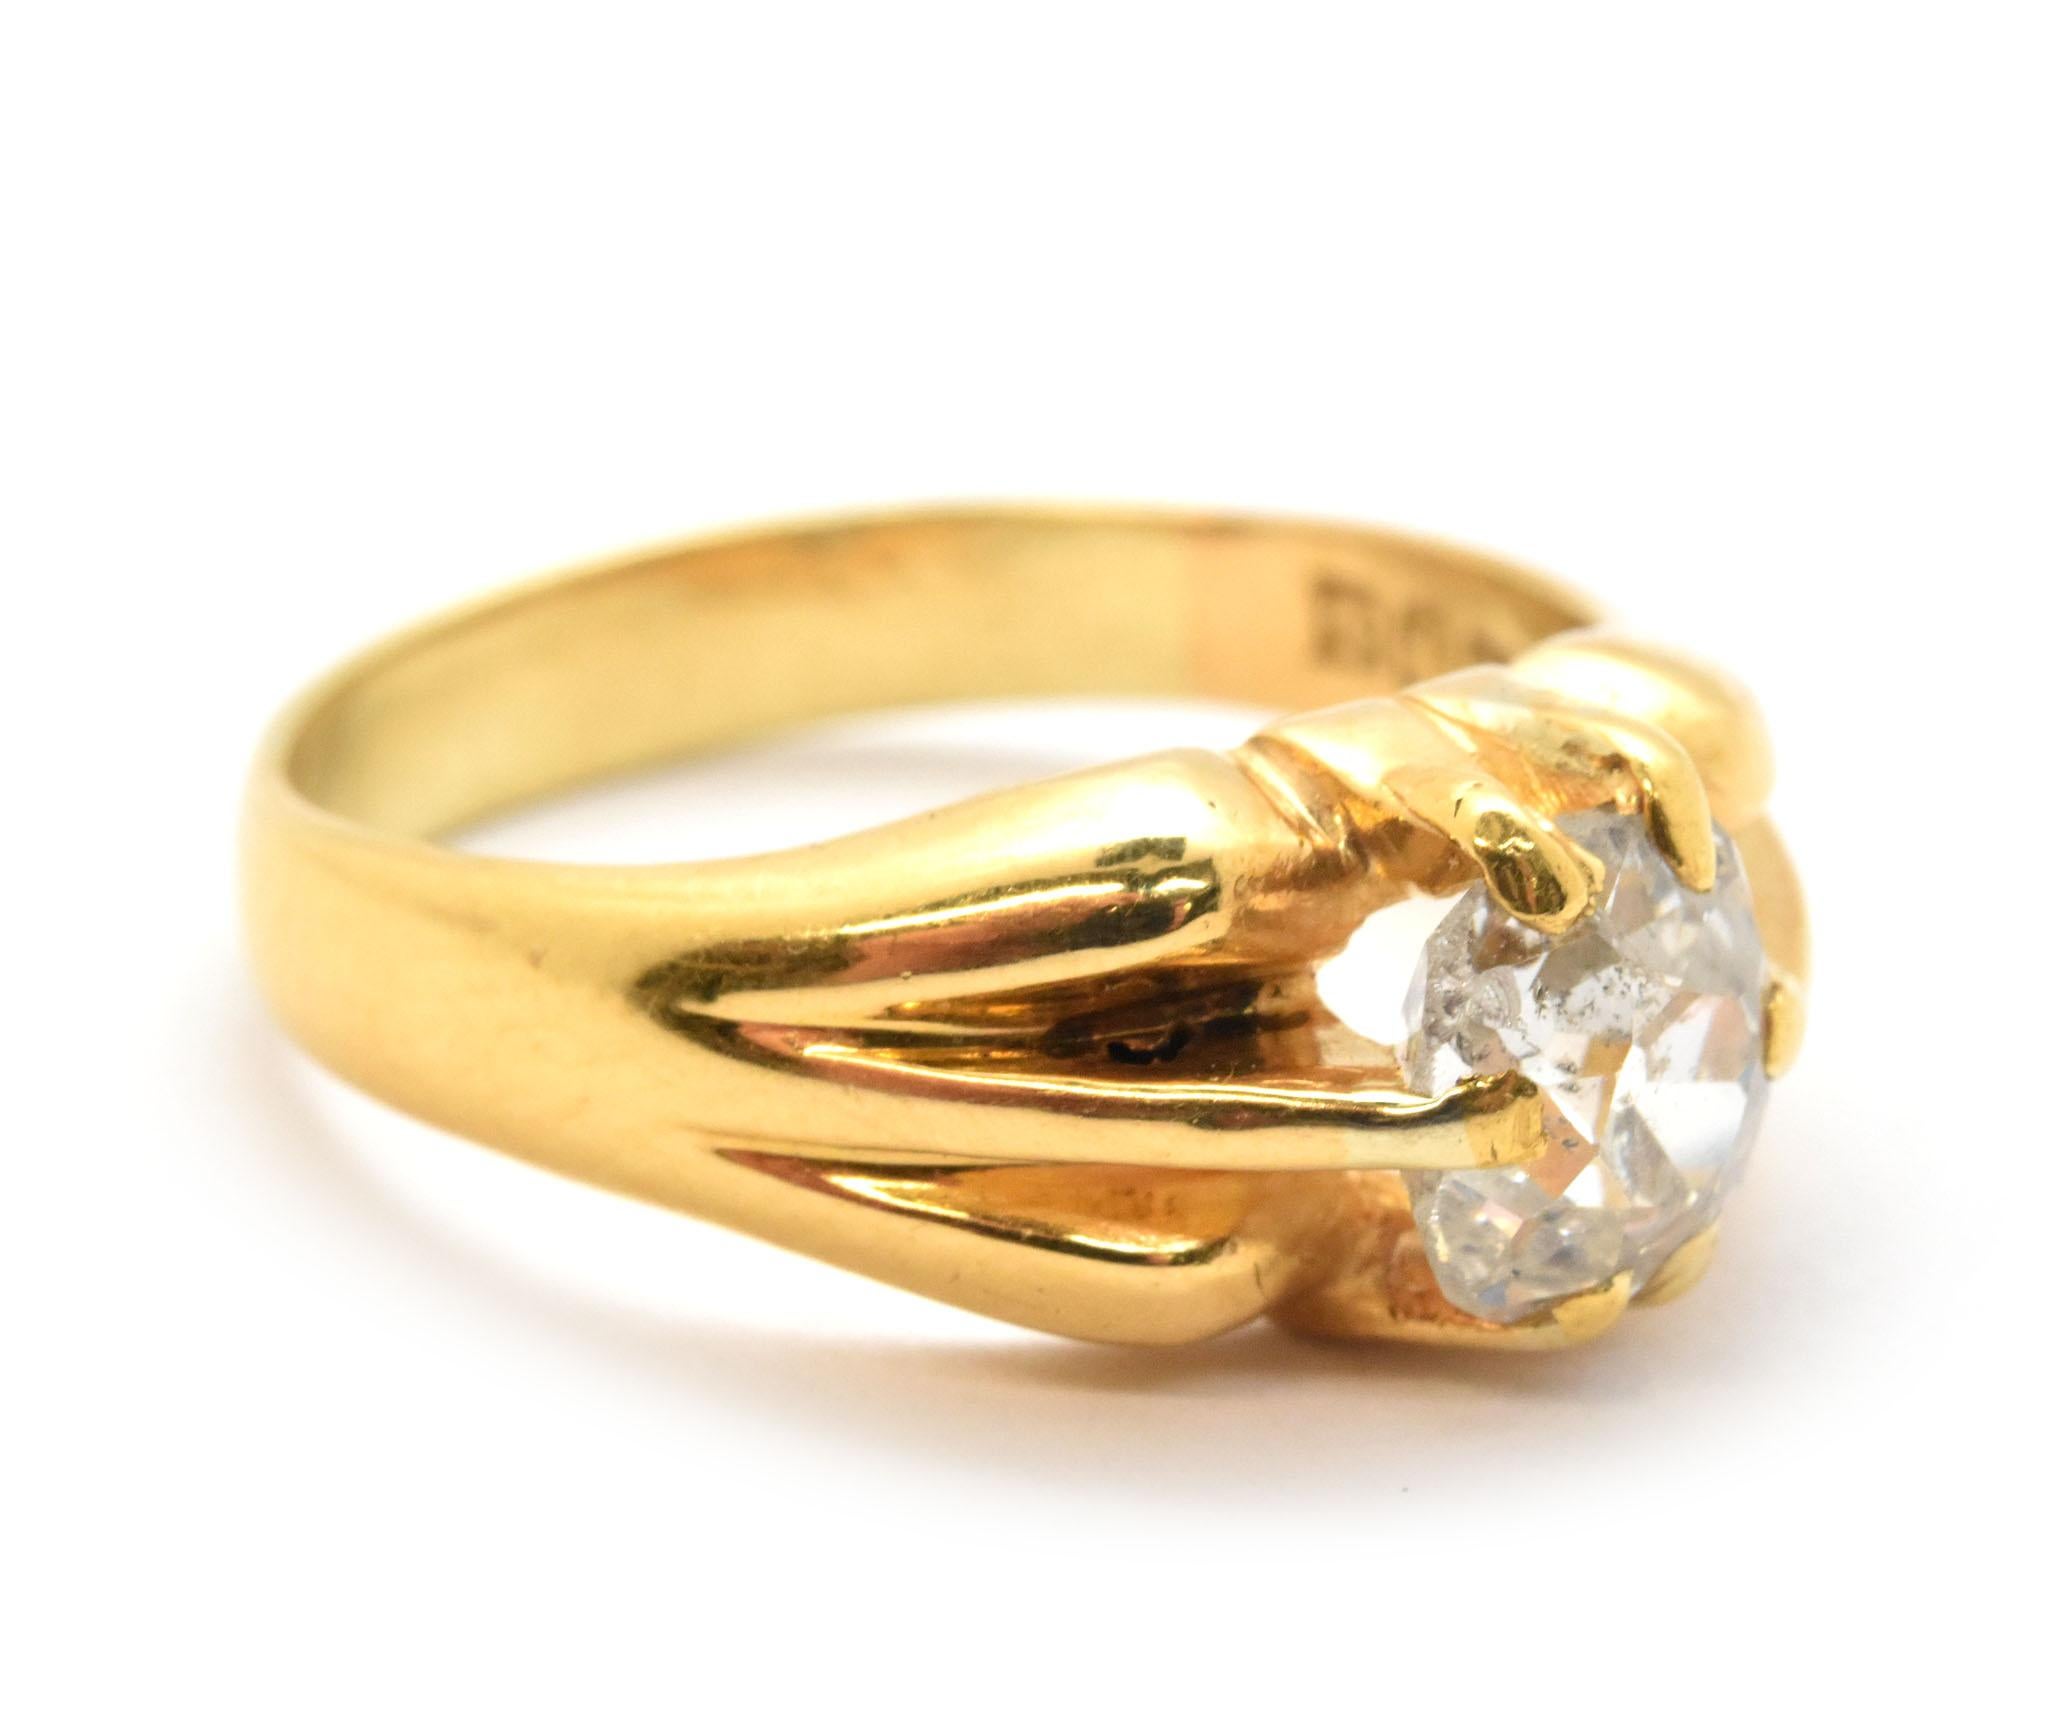 Dieser schöne Ring ist aus 21 Karat Gelbgold gefertigt und trägt in der Mitte einen Diamanten im Minenschliff von 1,10 Karat. Der Diamant ist in der Farbe H und in der Reinheit SI2 eingestuft. Der Ring ist 8 mm breit und wiegt 8,17 g. Sie hat die